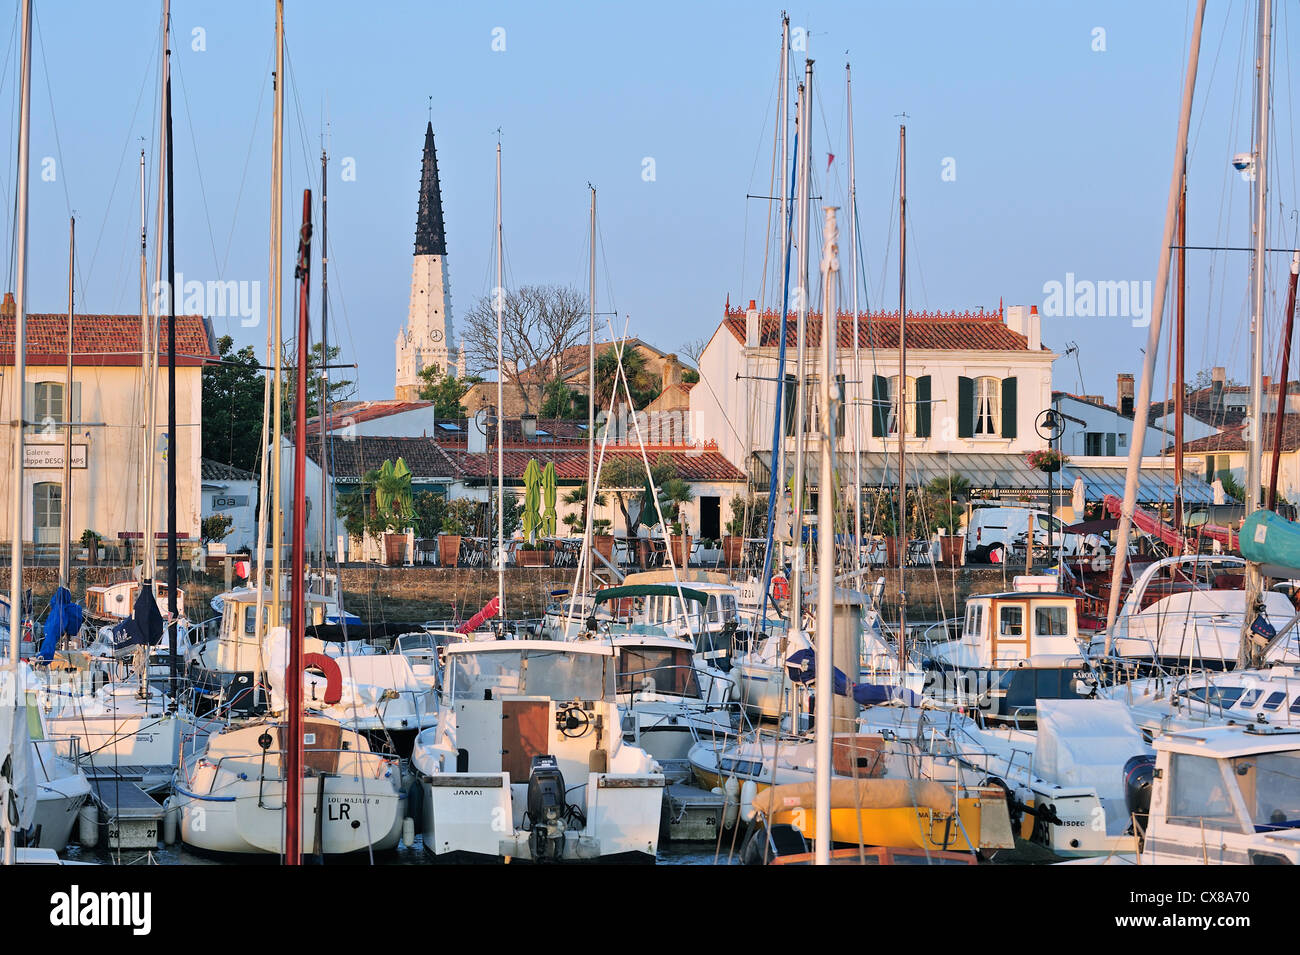 Le noir et blanc tour de l'église et la voile bateaux du port, à Ars-en-Ré sur l'île Ile de Ré, Charente-Maritime, France Banque D'Images